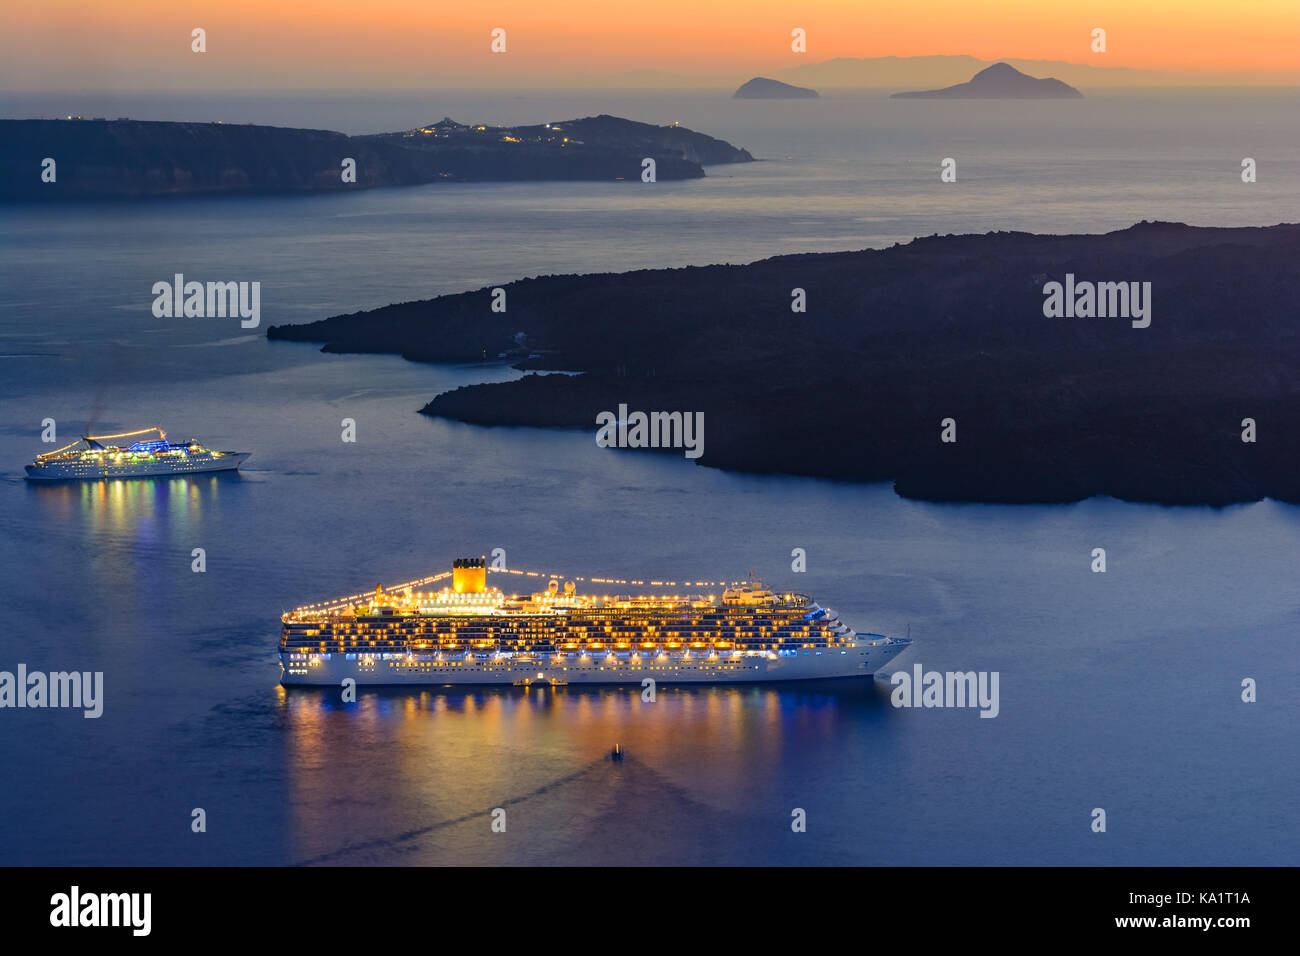 Navire naviguant dans le coucher du soleil, l'île de Santorin, Grèce, Europe Banque D'Images